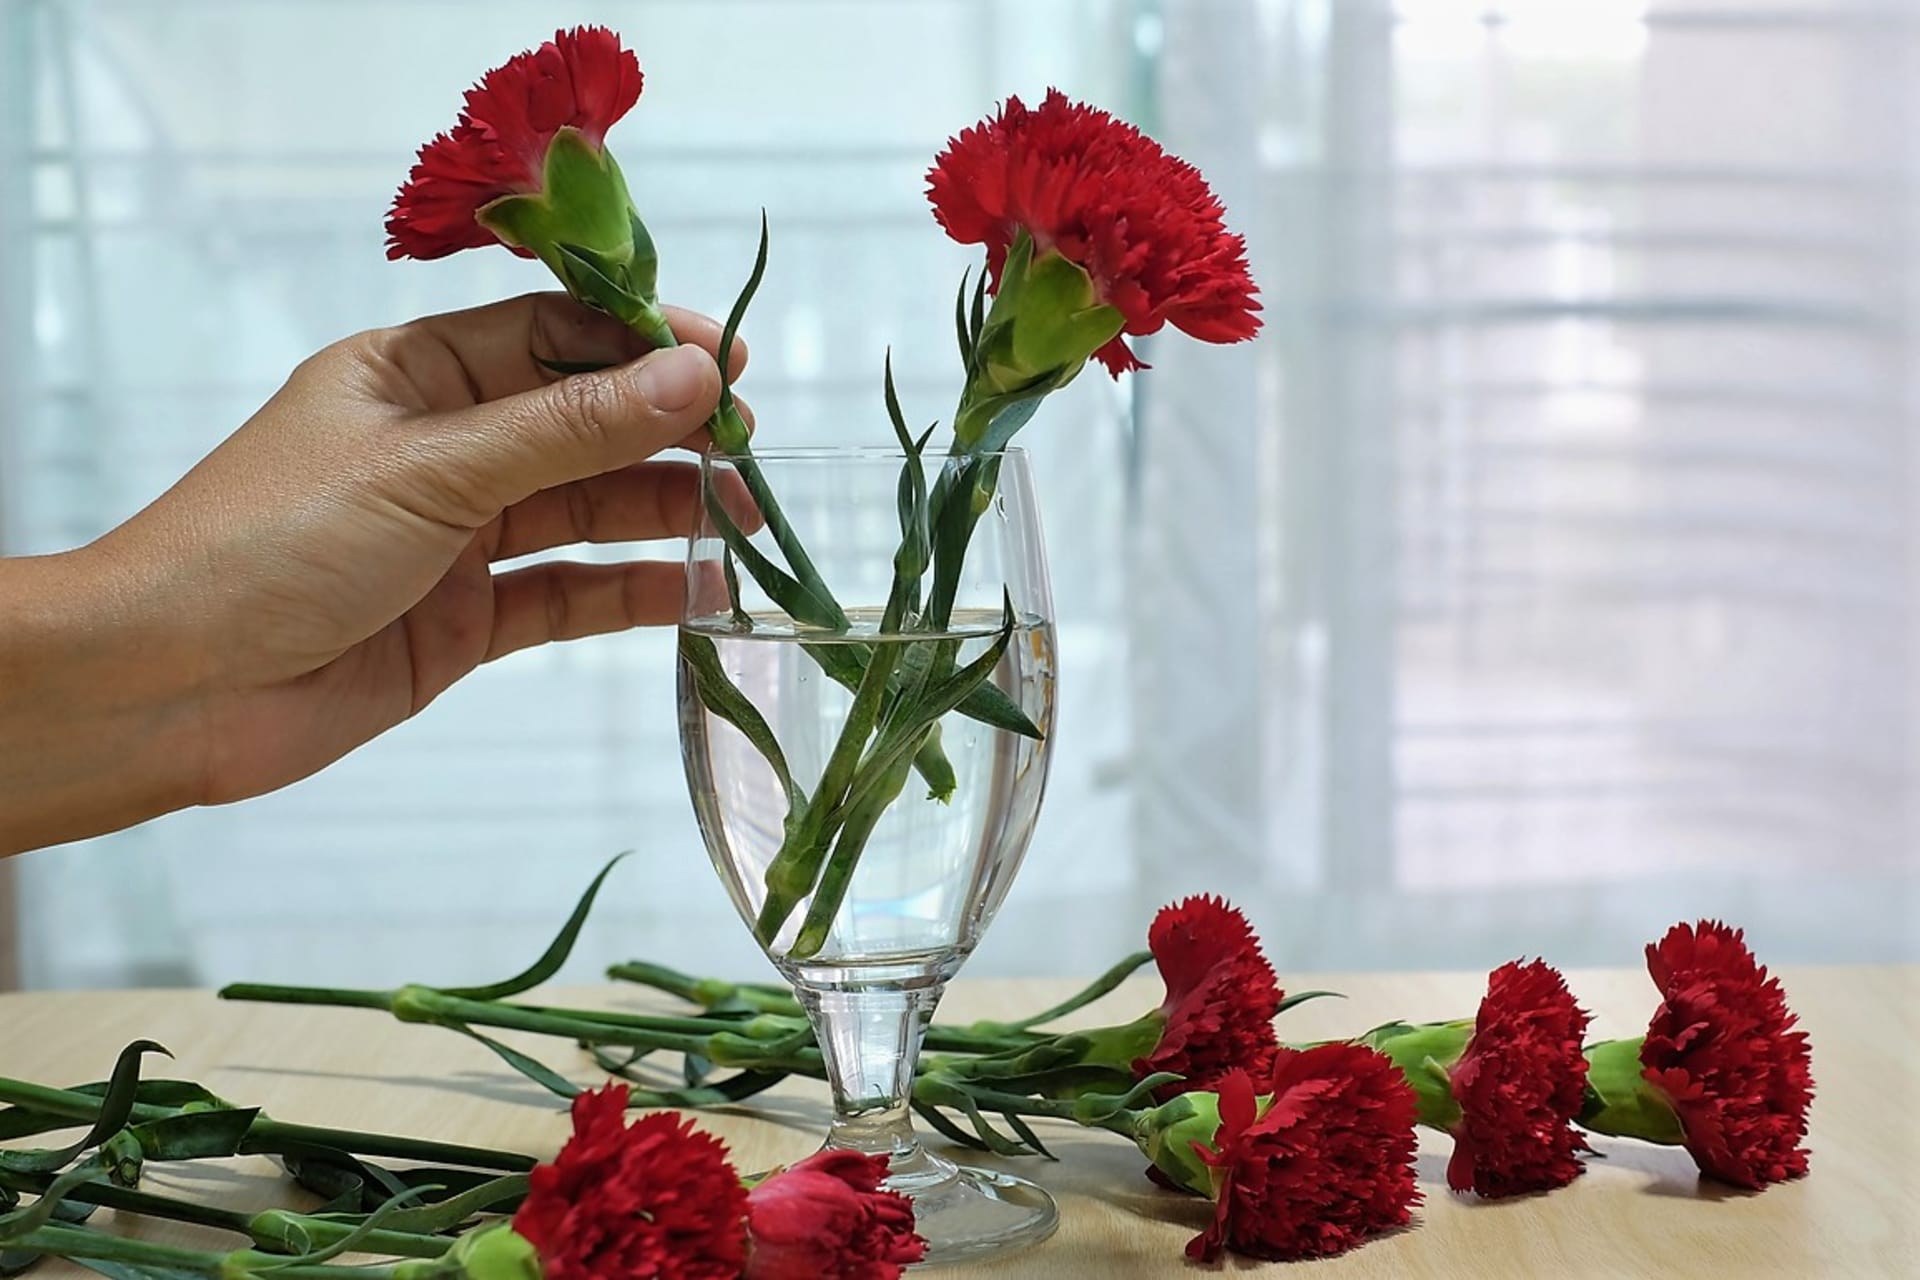 Než květiny umístíte do vázy, zbavte stonky přebytečných listů. Pak je seřízněte šikmo ostrým nožem pod úhlem zhruba 45 stupňů. Účelem tohoto řezu je zvětšit plochu, kterou do sebe květina může dostávat vodu a živiny.